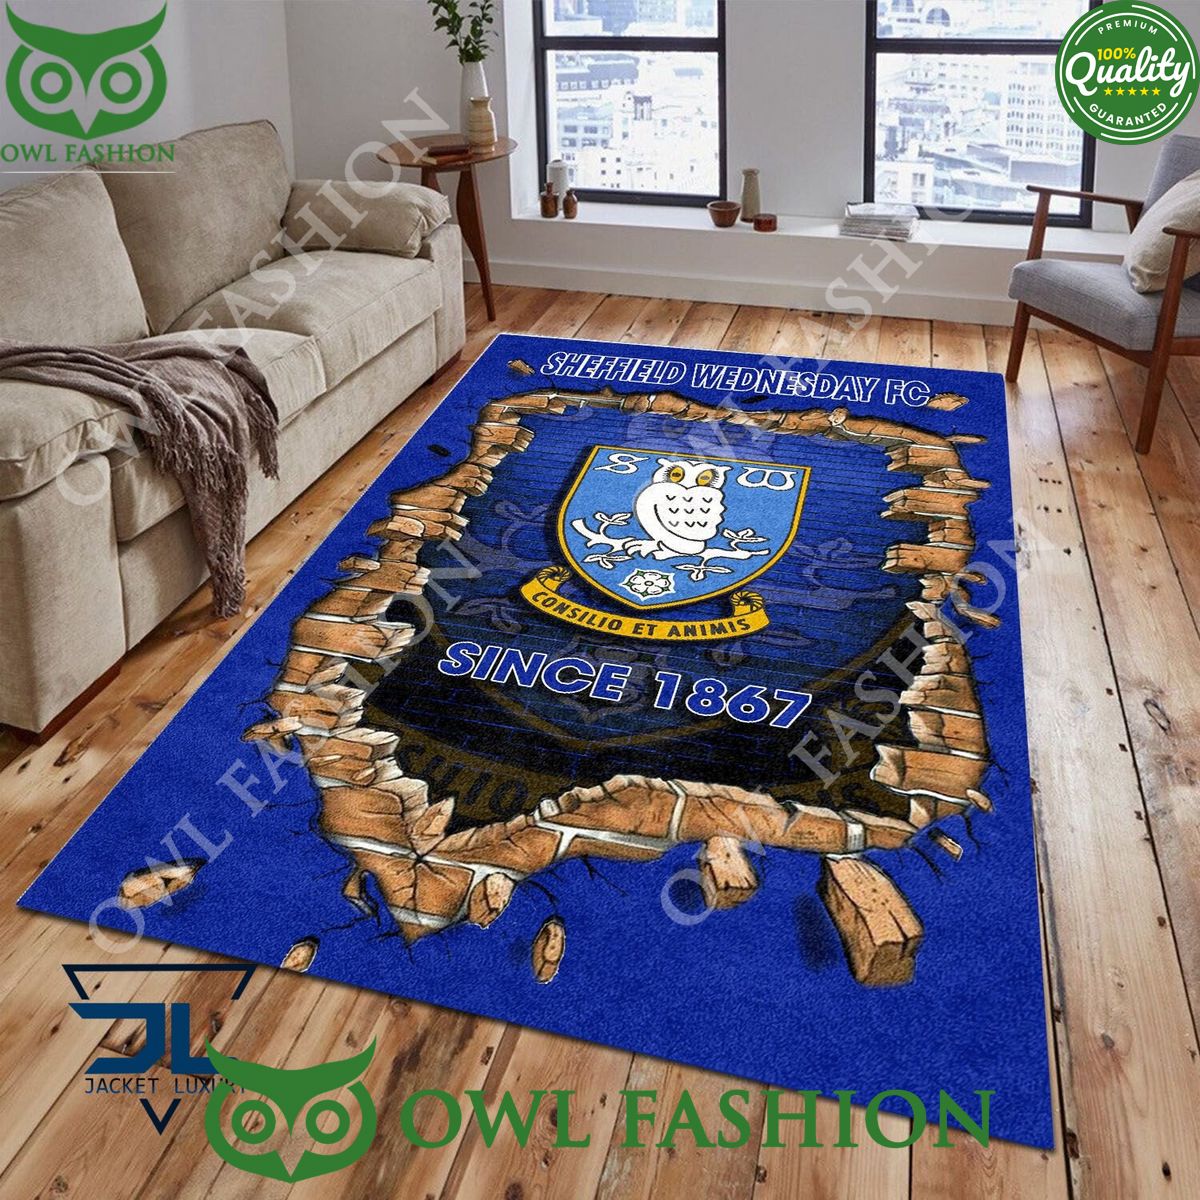 football sheffield wednesday 1811 epl living room rug carpet 1 qwPL3.jpg